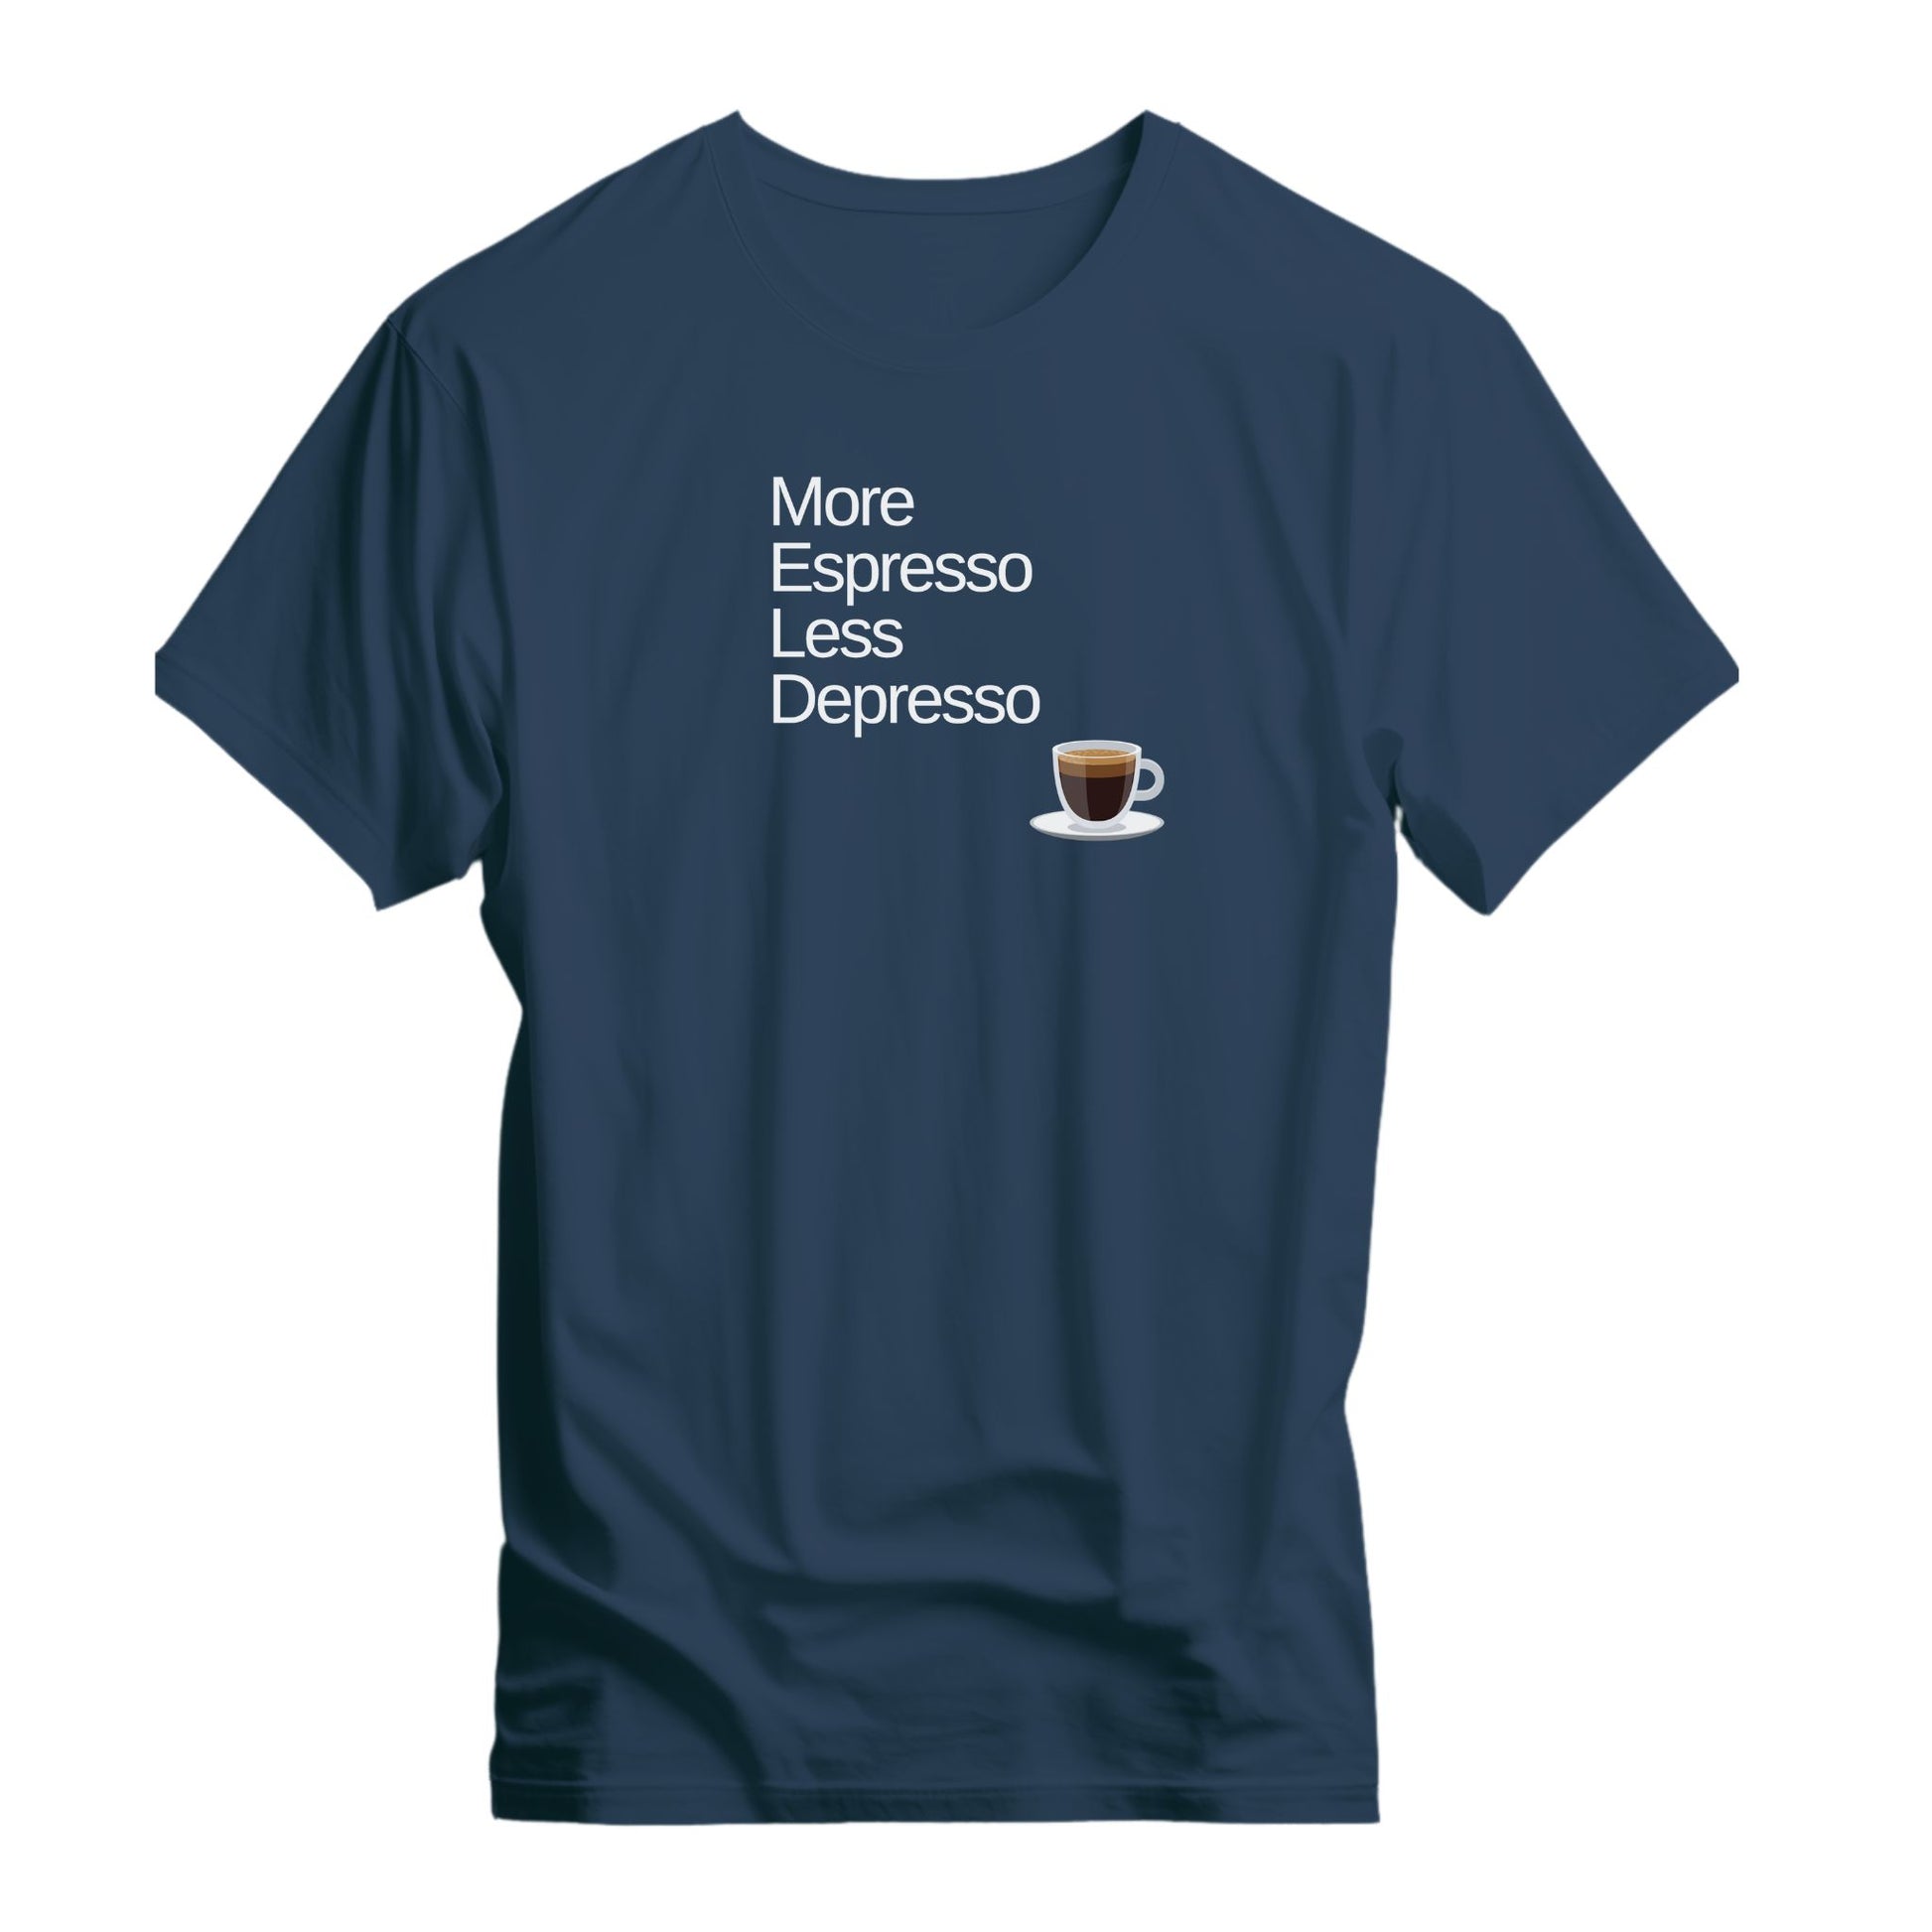 More Espresso Less Depresso T-shirt - Tortuna